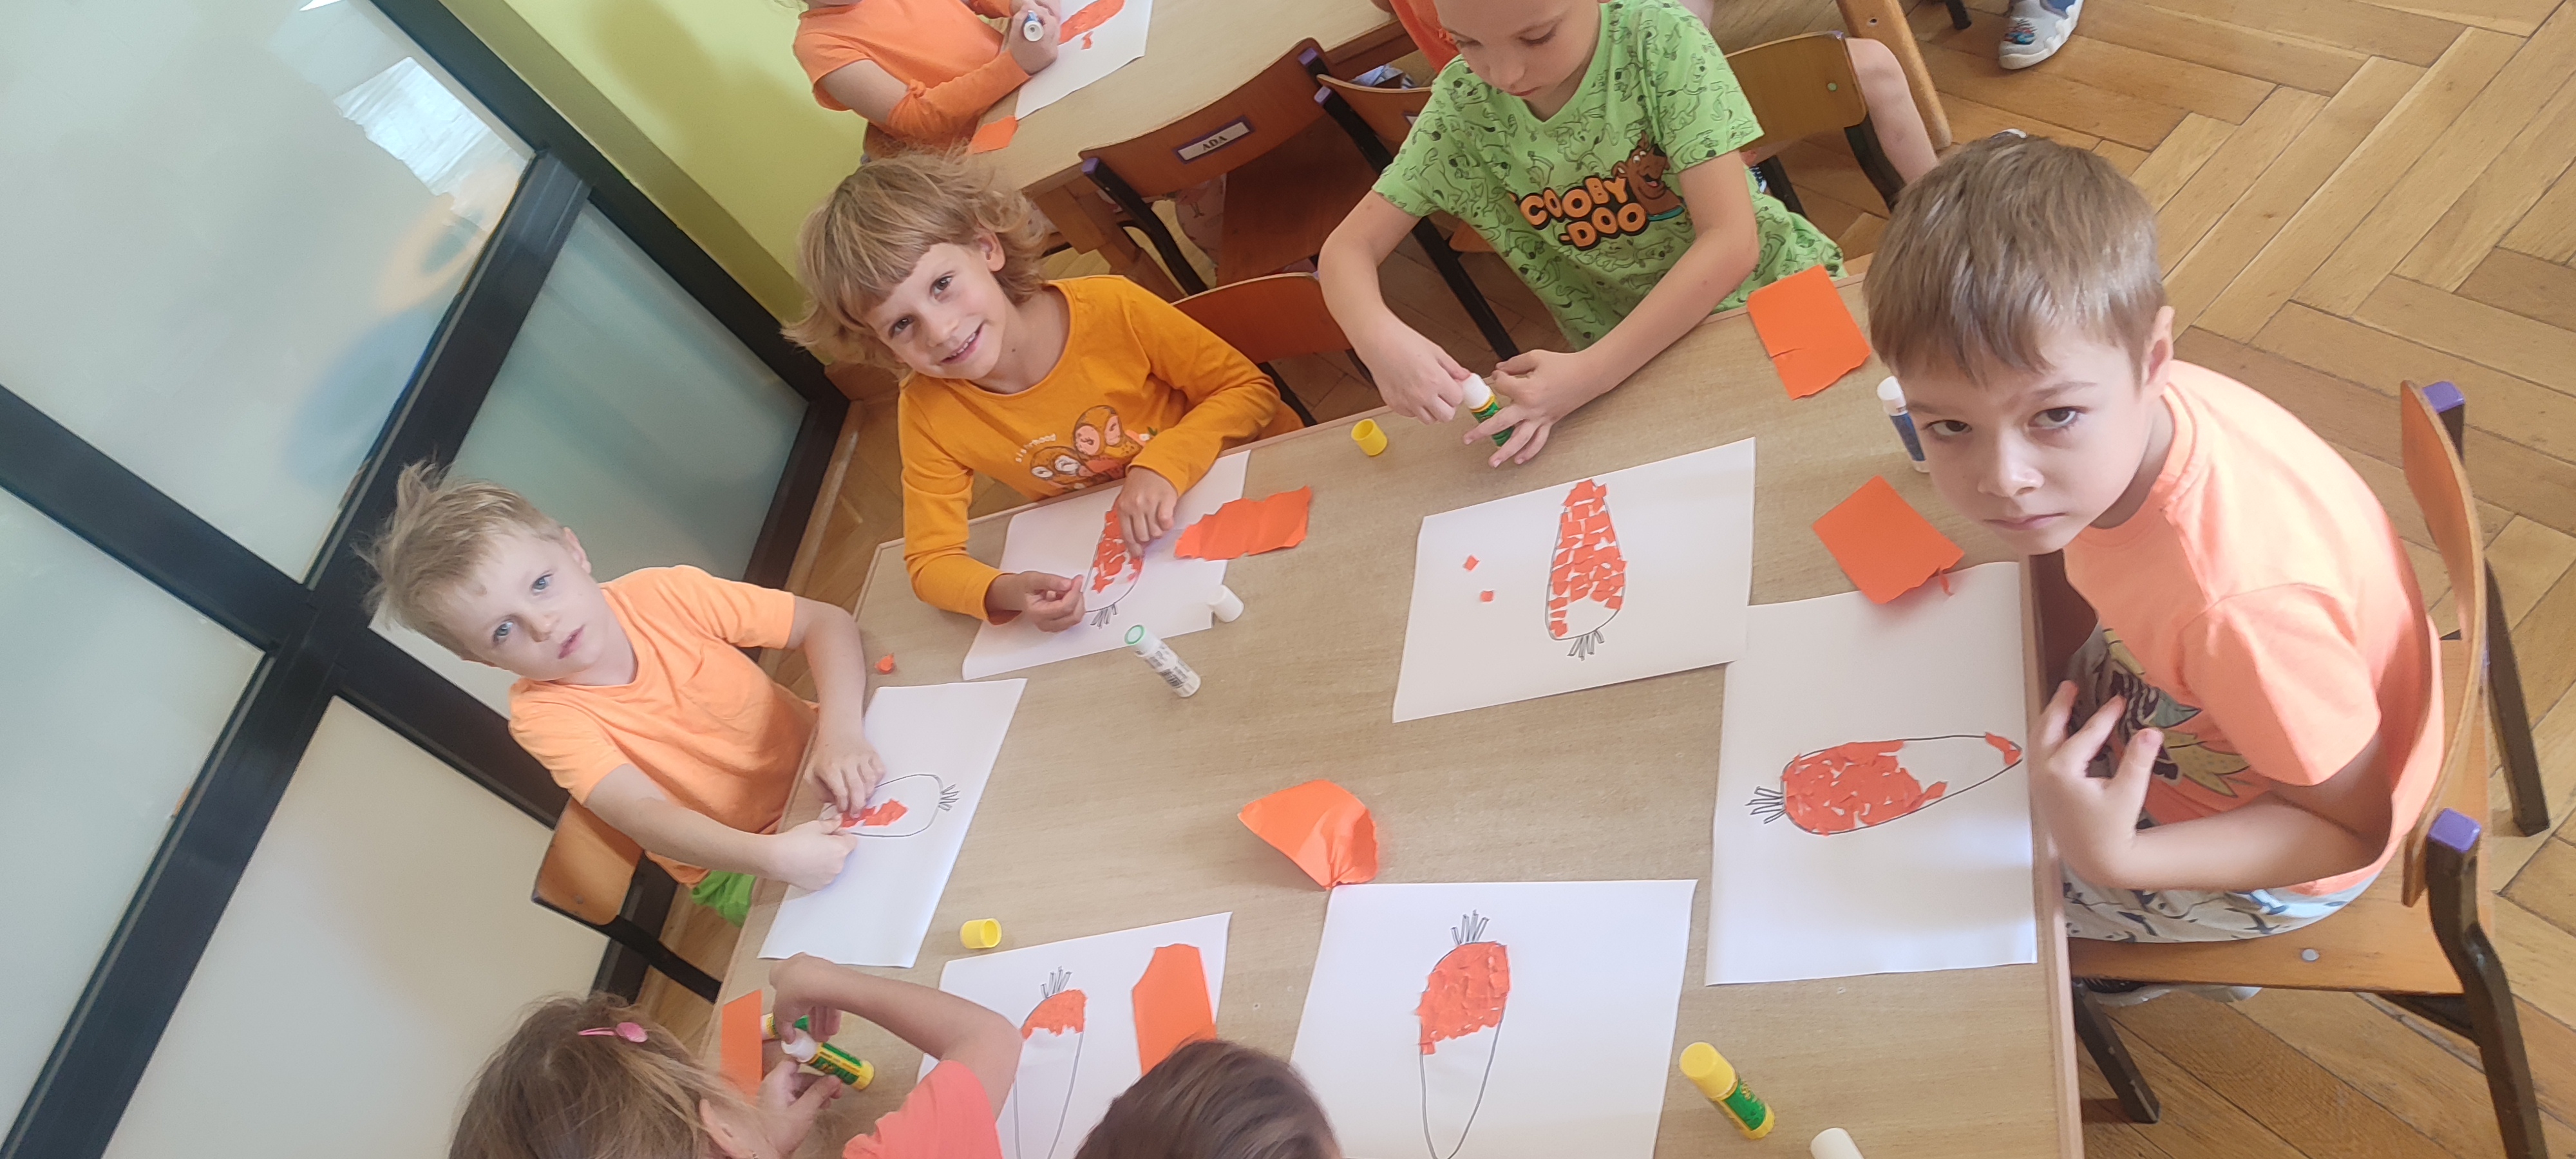 Dzieci siedzą przy stolikach i wykonują pracę plastyczną- marchewka z wydzieranych kawałków papieru